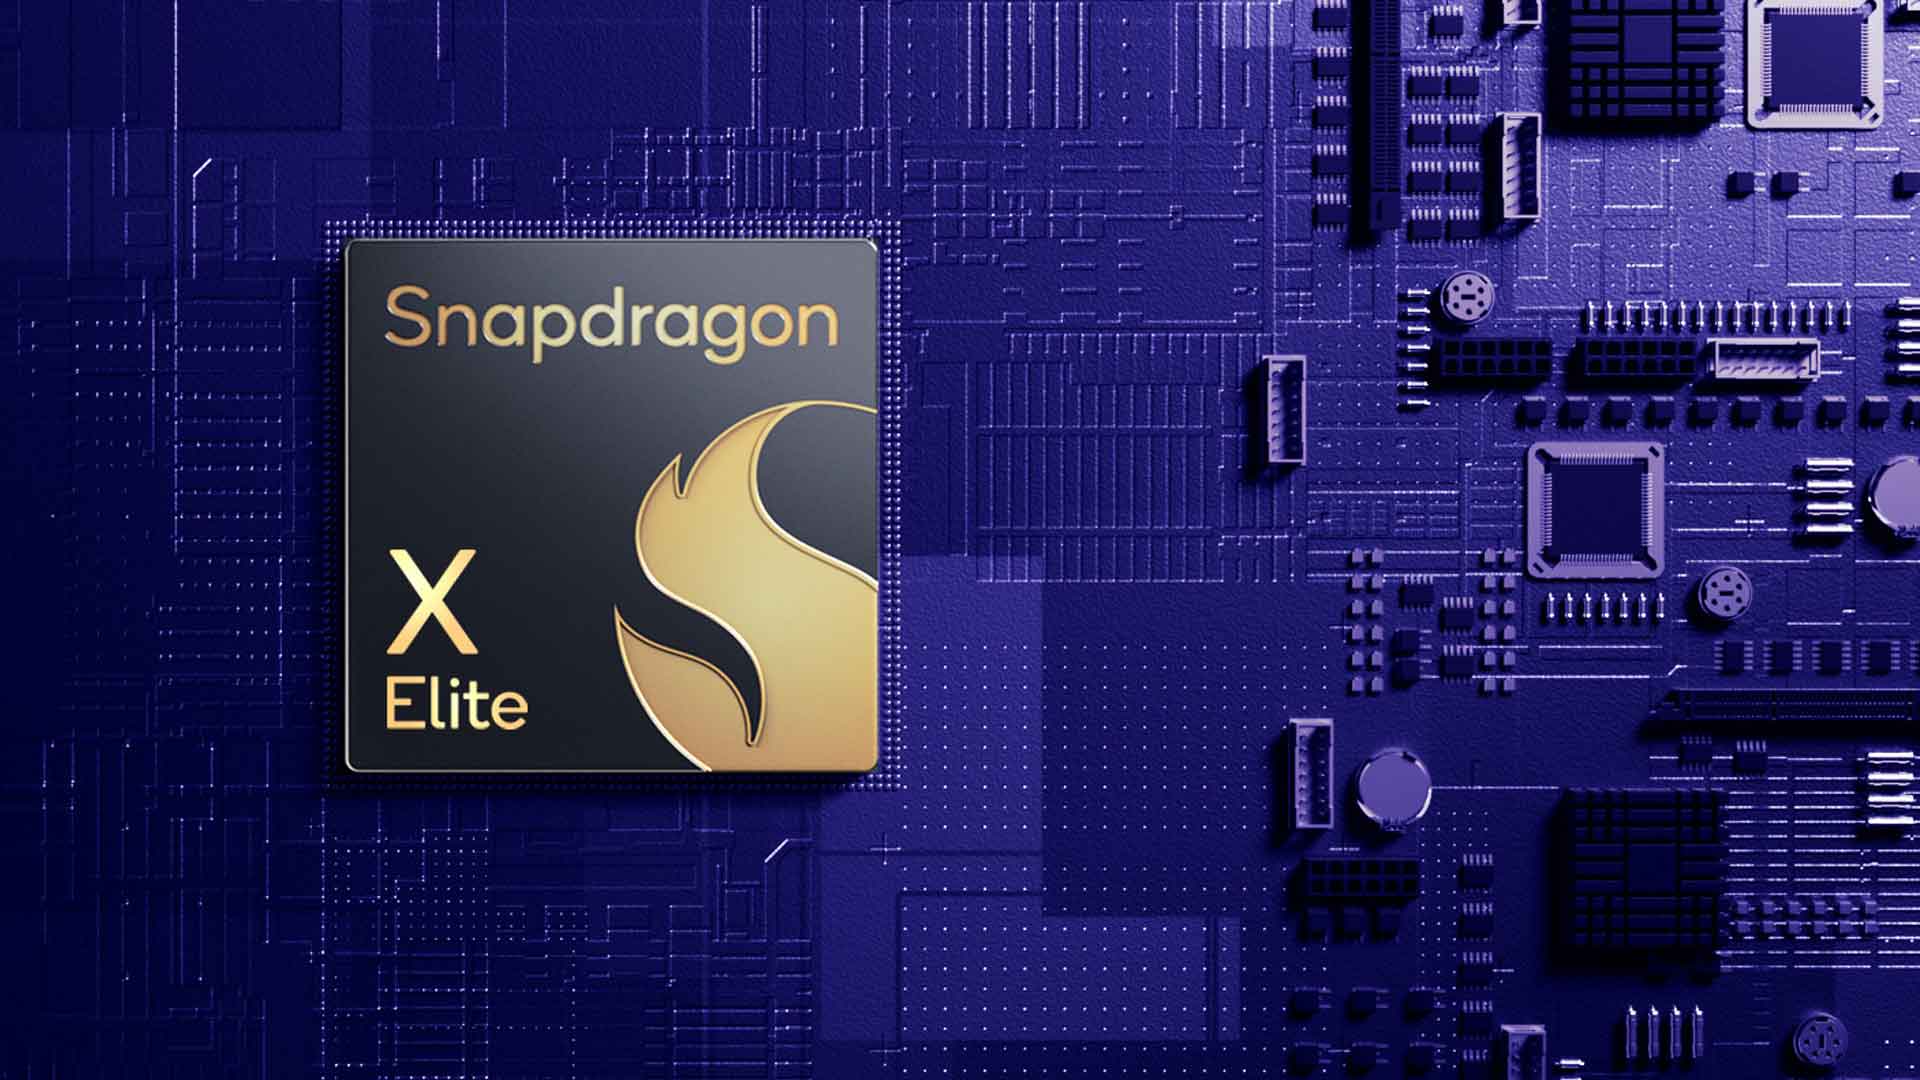 PCs Snapdragon X Elite